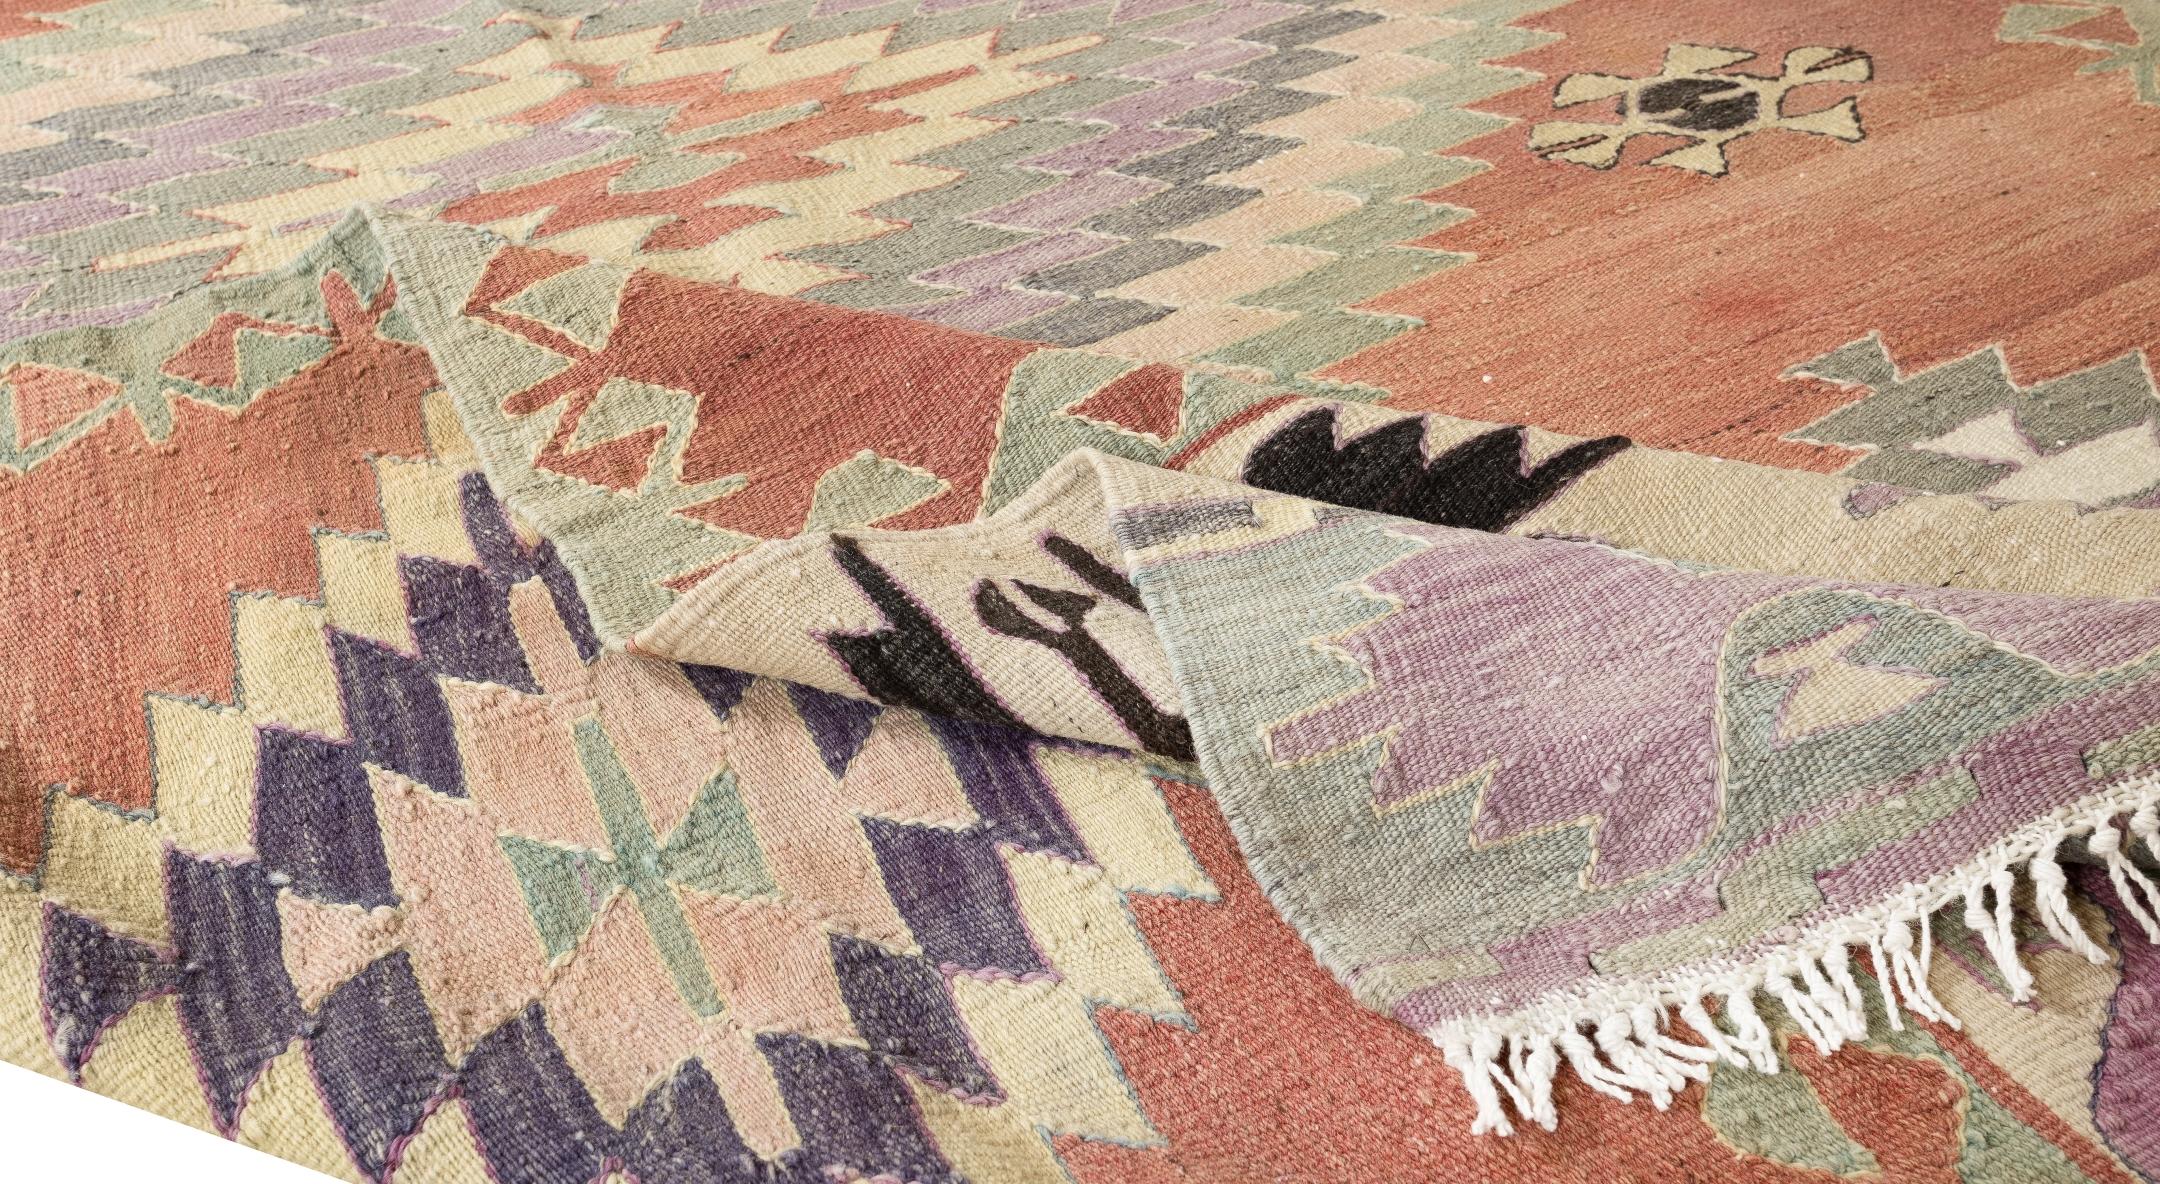 Cet authentique tapis tissé à la main a été conçu pour être utilisé par les villageois d'Anatolie centrale. 100% laine biologique. En bon état et nettoyé professionnellement.
Idéal pour les intérieurs résidentiels et commerciaux. 
Taille : 4.7x8.7